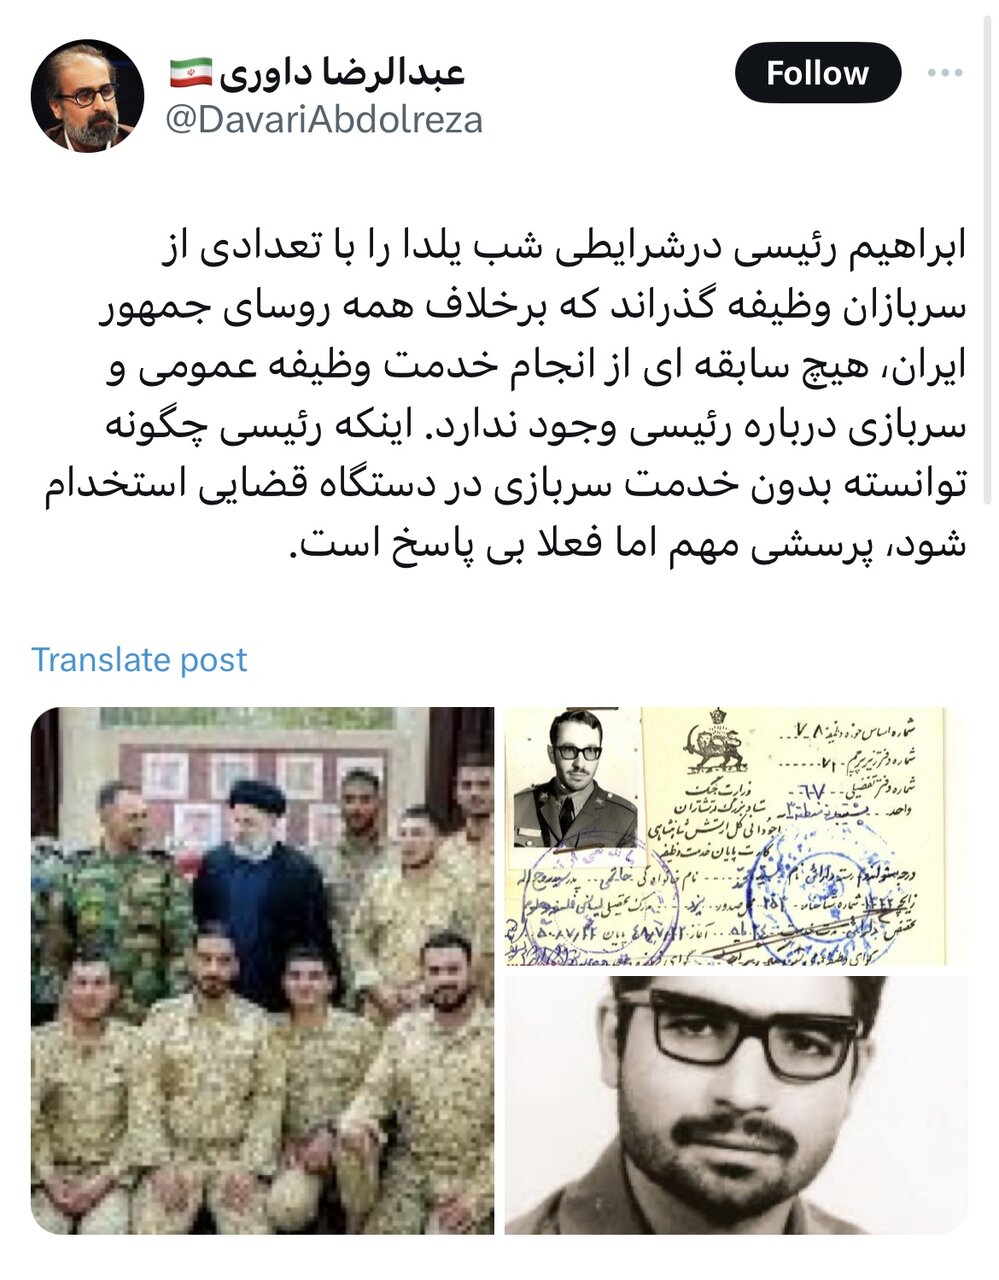 کنایه توئیتری با انتشار تصاویری از سربازی سیدمحمد خاتمی و حسن روحانی: رئیسی چگونه توانسته بدون خدمت سربازی در دستگاه قضایی استخدام شود؟